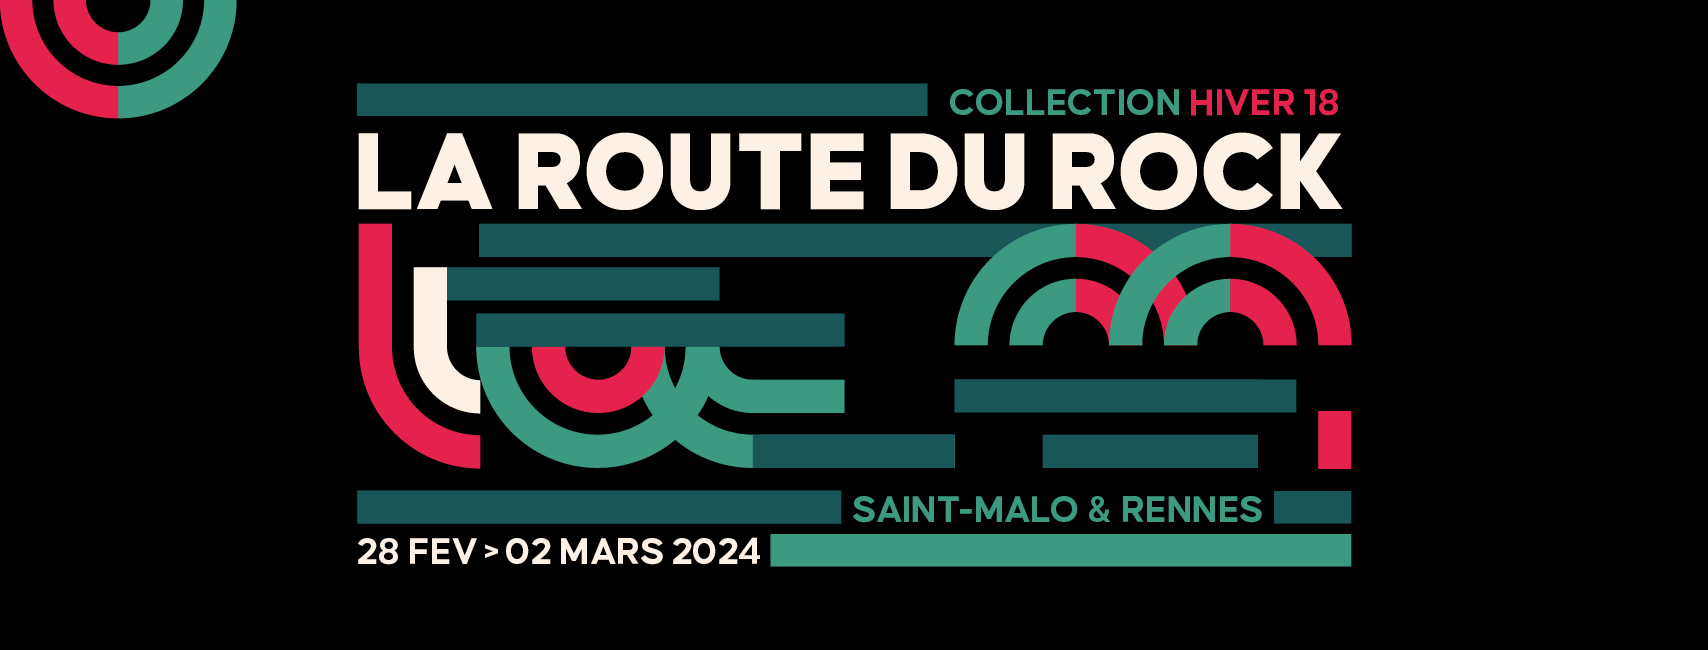 La Route du Rock Hiver, 28 février au 2 mars 2024, St-Malo & Rennes (35)